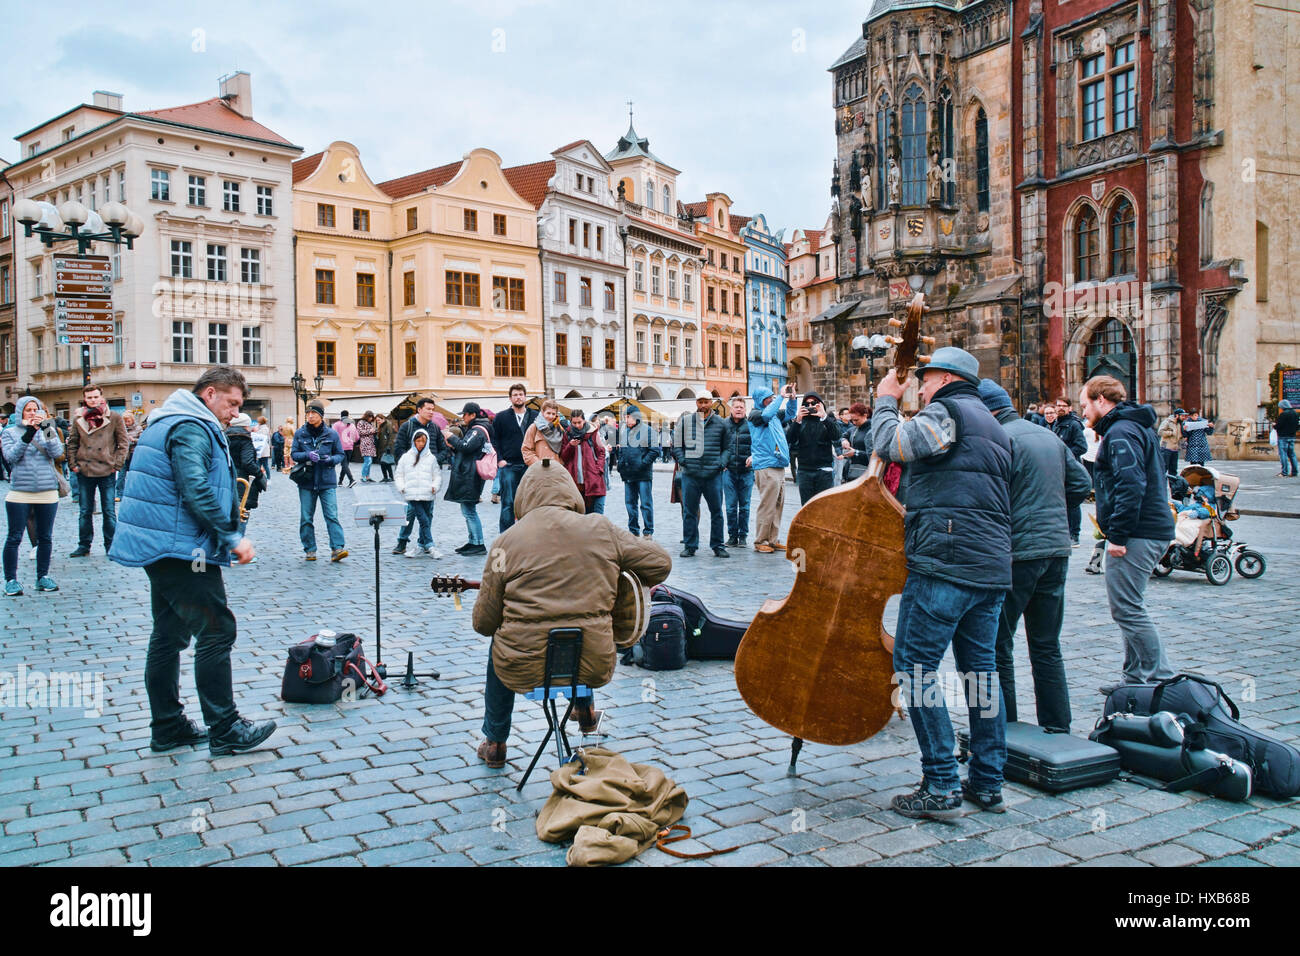 Musicisti di strada a Piazza della Città Vecchia di Praga - Praga / Repubblica ceca - MARZO 20, 2017 Foto Stock